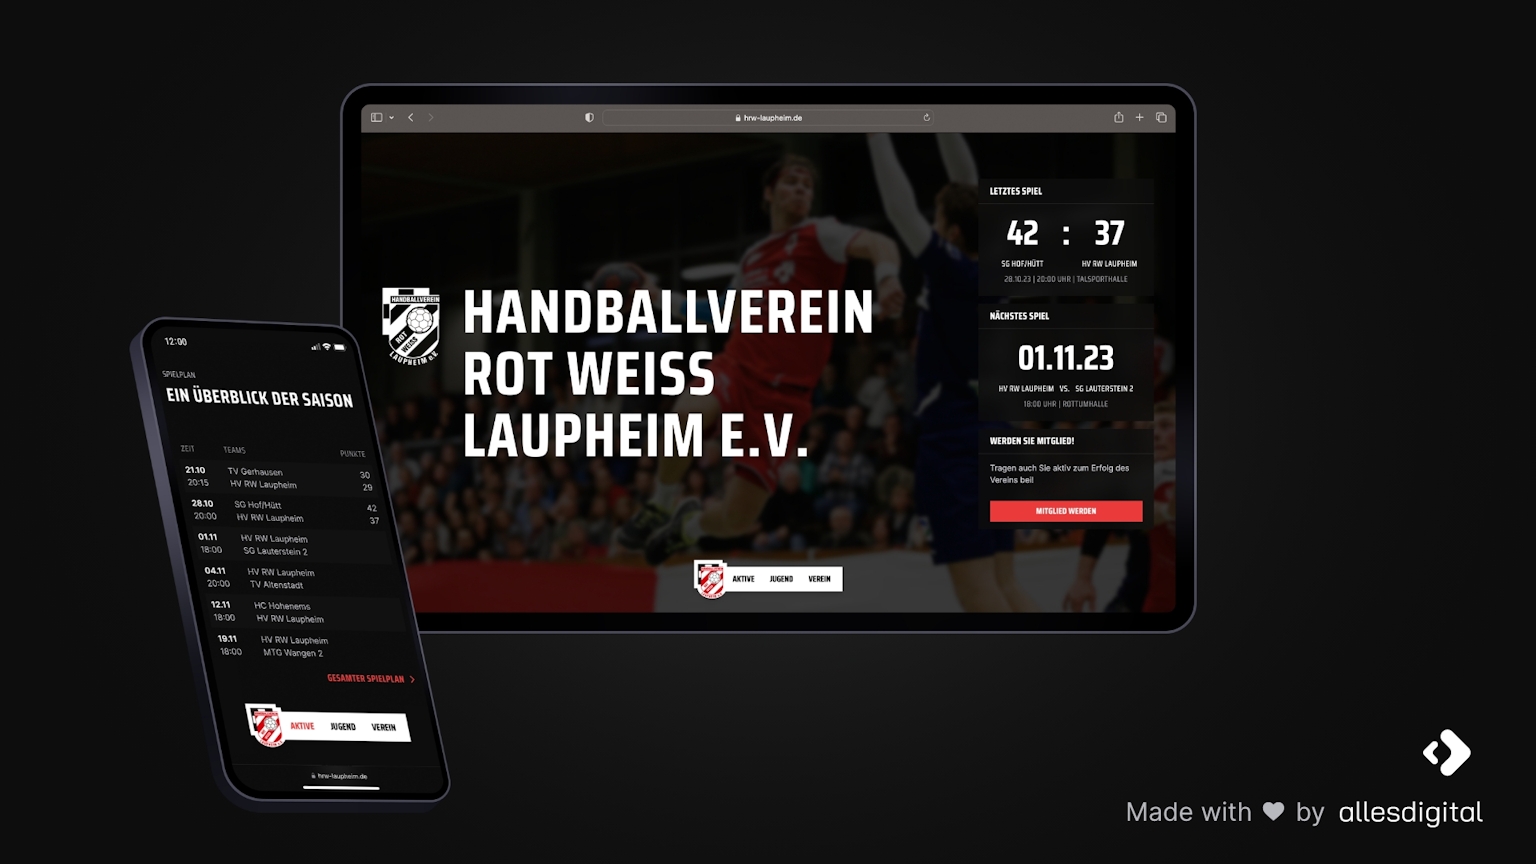 Ein Handball mit HRW-Logo liegt in einer Sporthalle